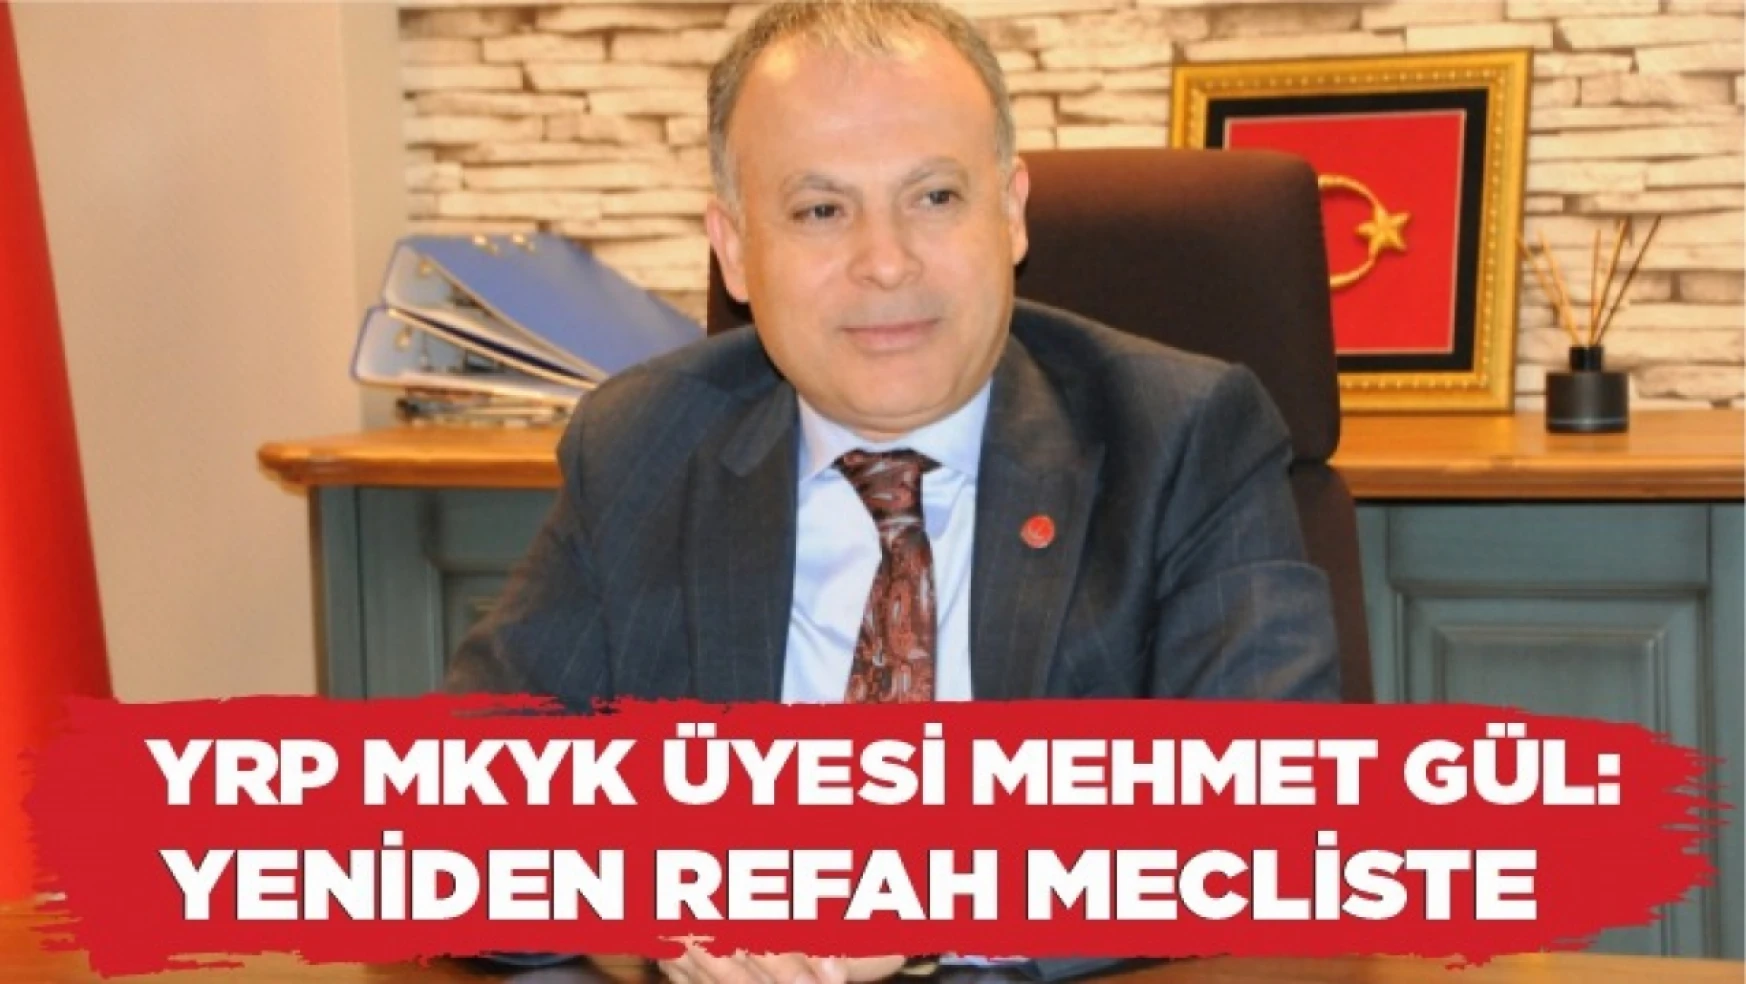 YRP MKYK Üyesi Mehmet Gül, Yeniden Refah Mecliste